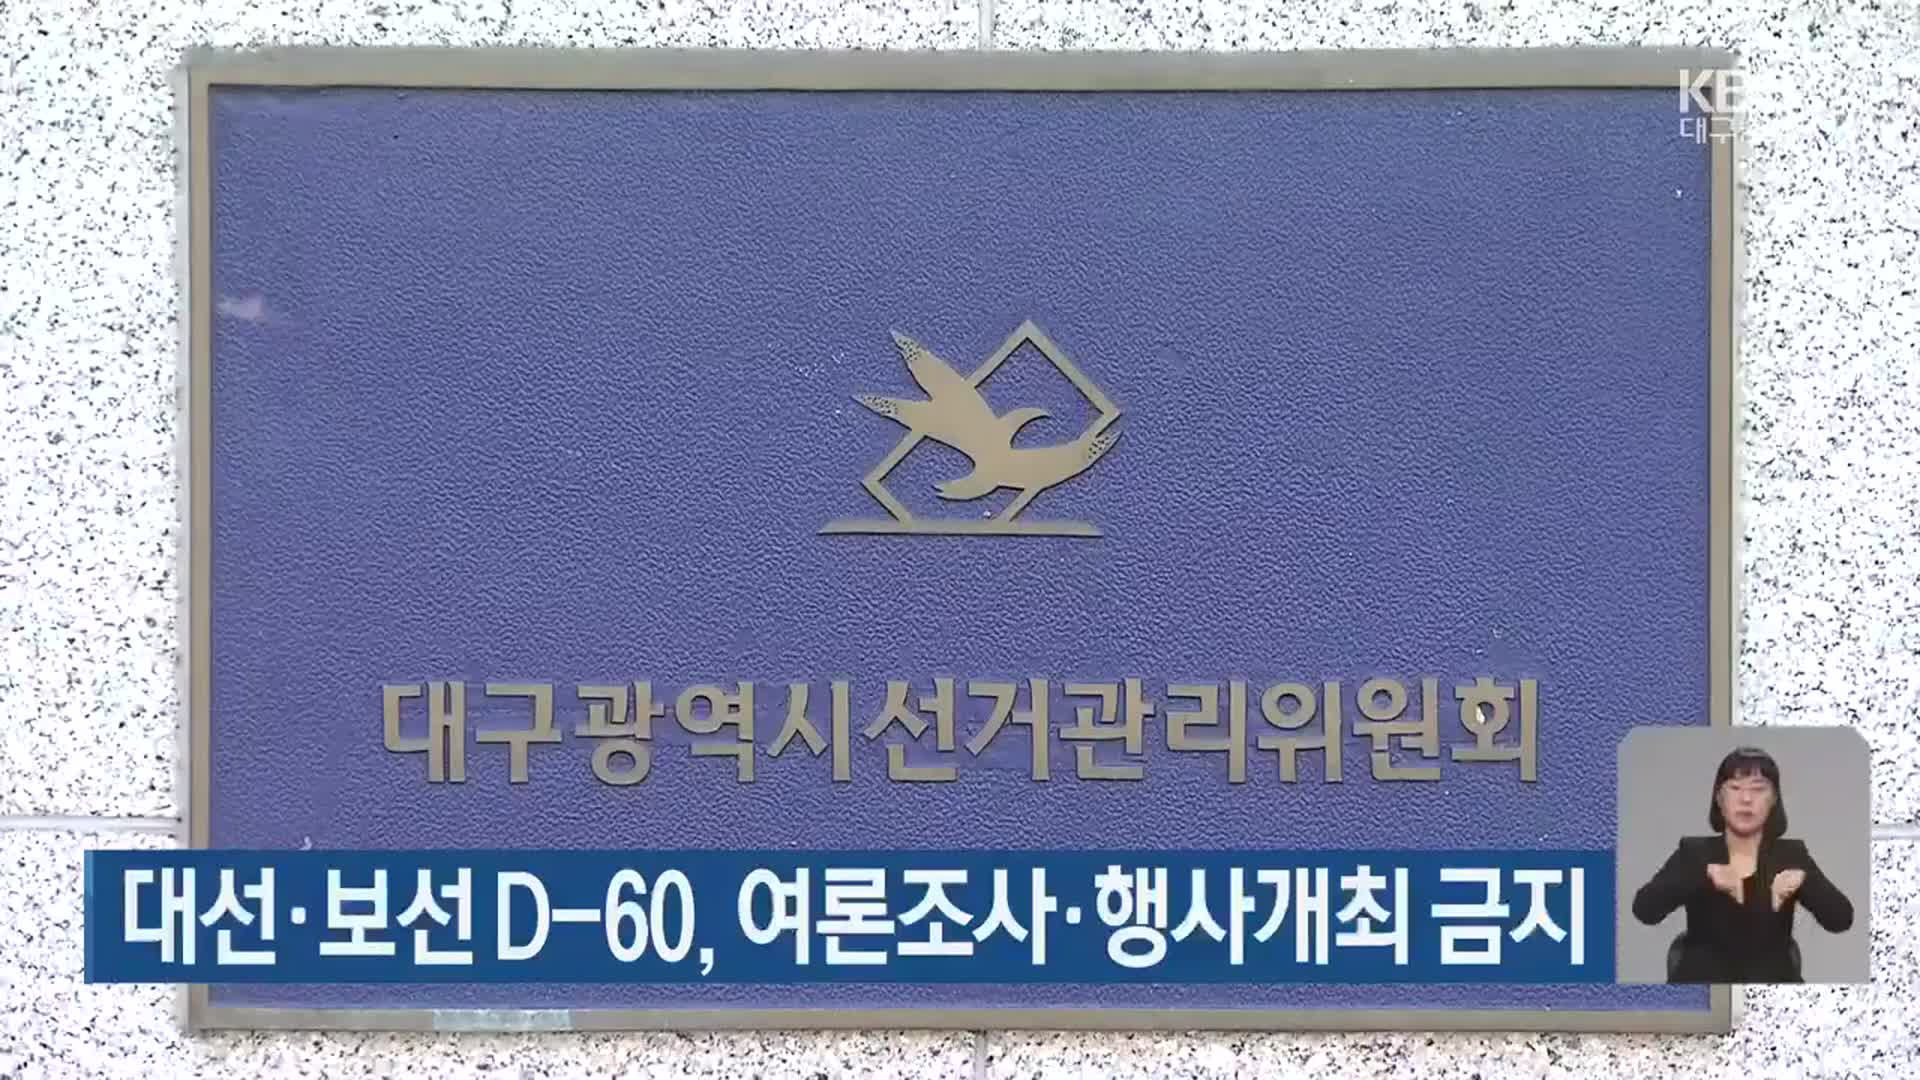 대선·보선 D-60, 여론조사·행사개최 금지